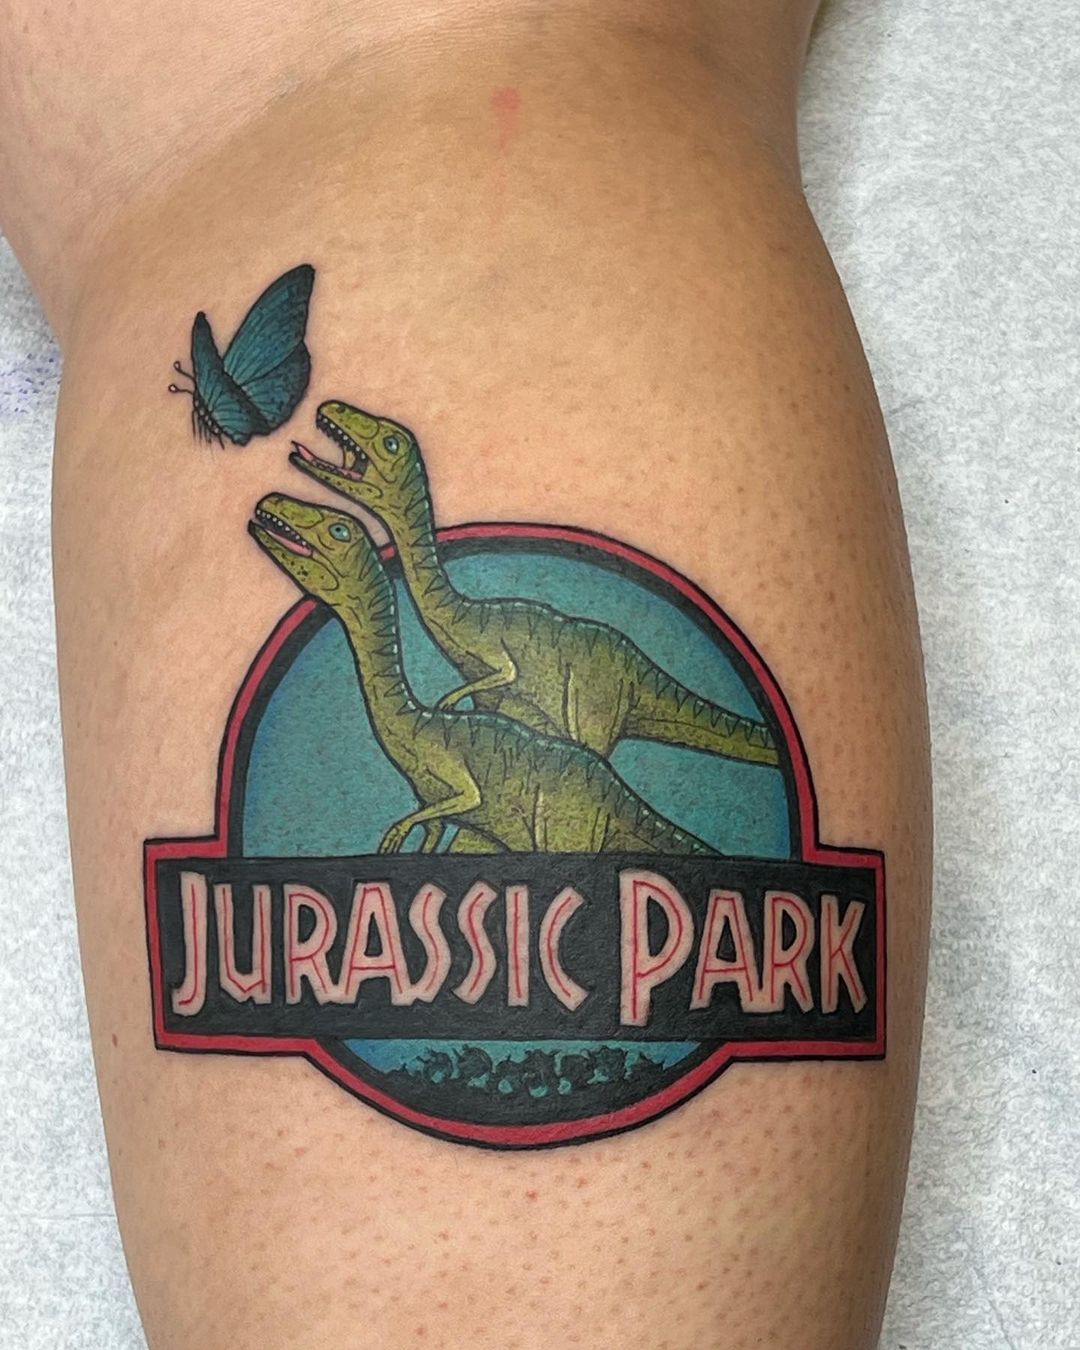 Colourful Jurassic Park Thigh Tattoo